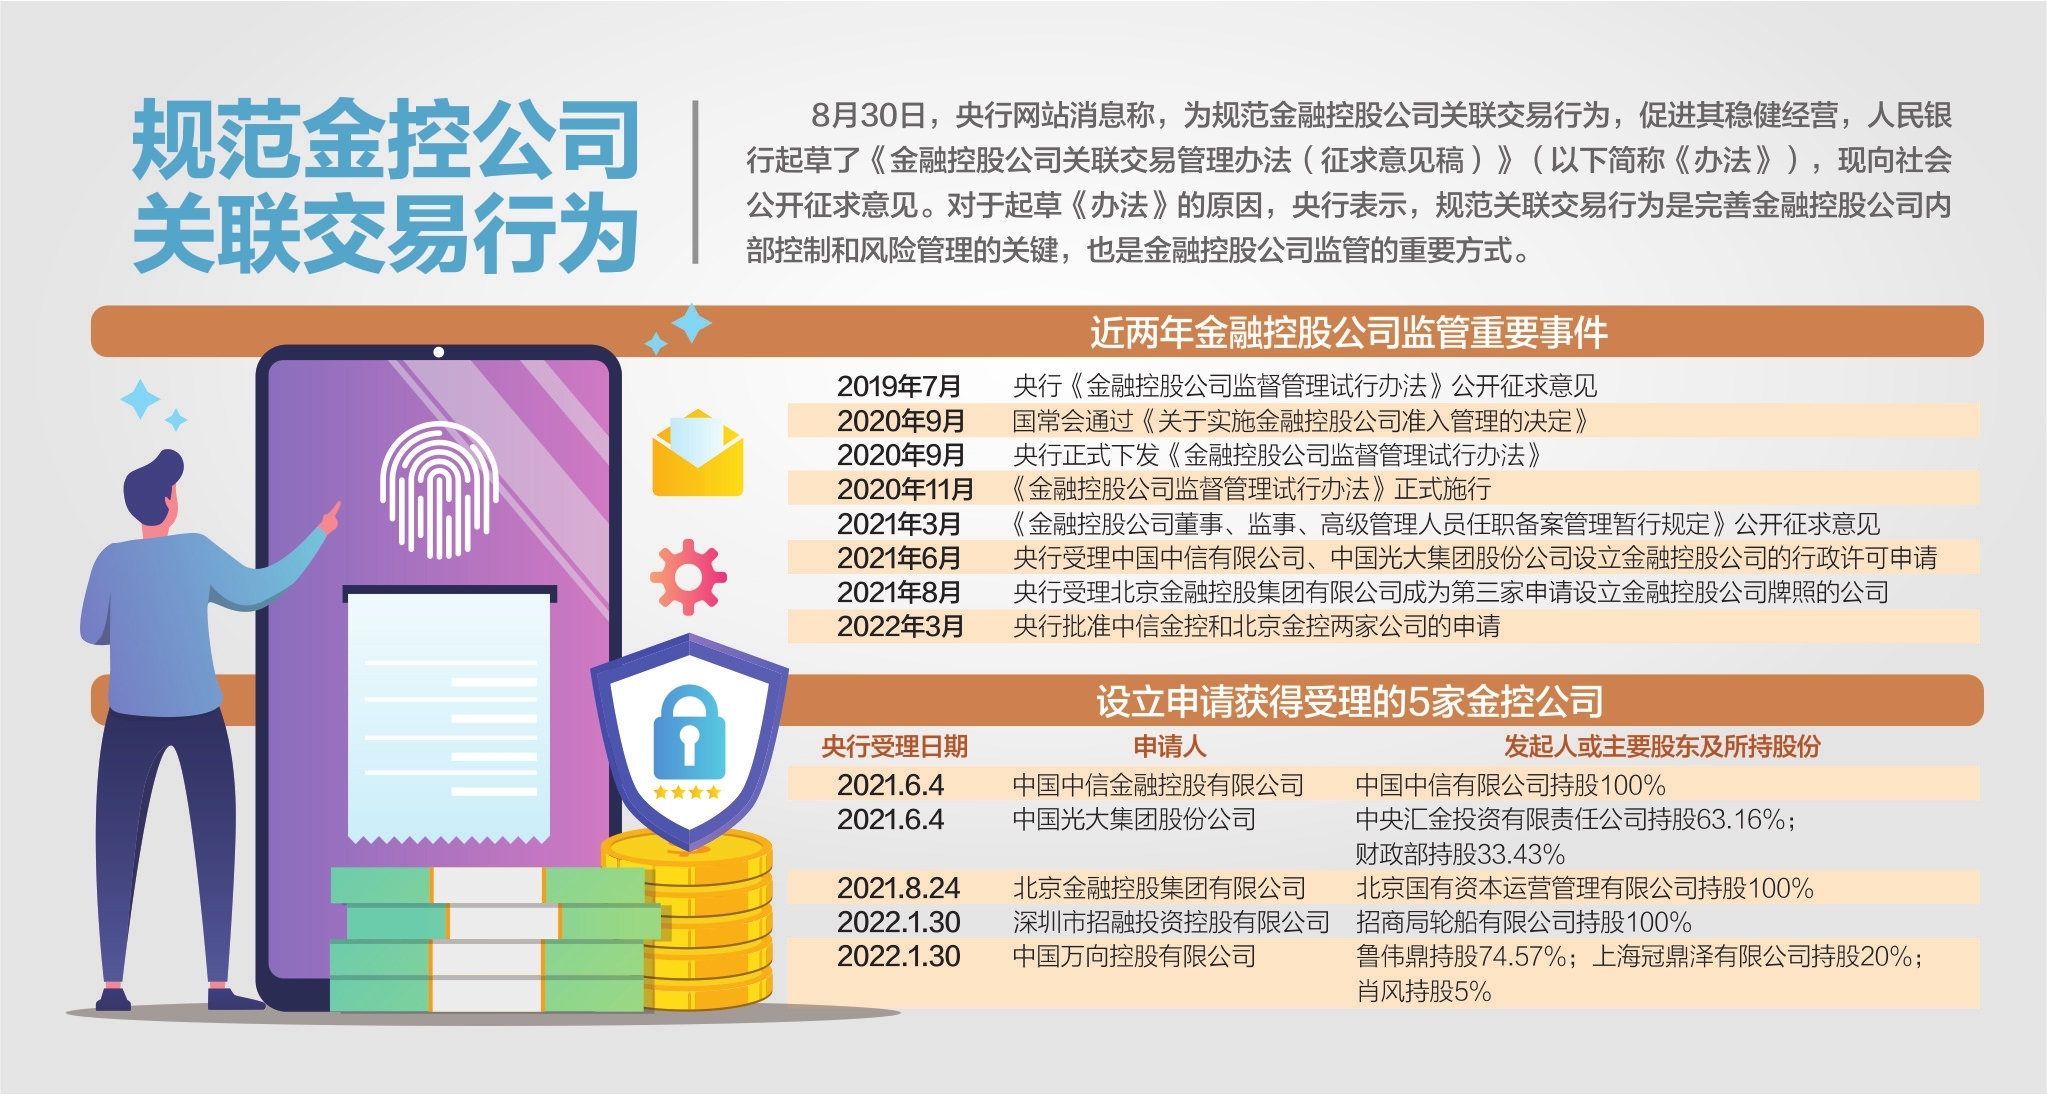 对中国央行数字货币的创新见解 - 市场报告 — C114(通信网)